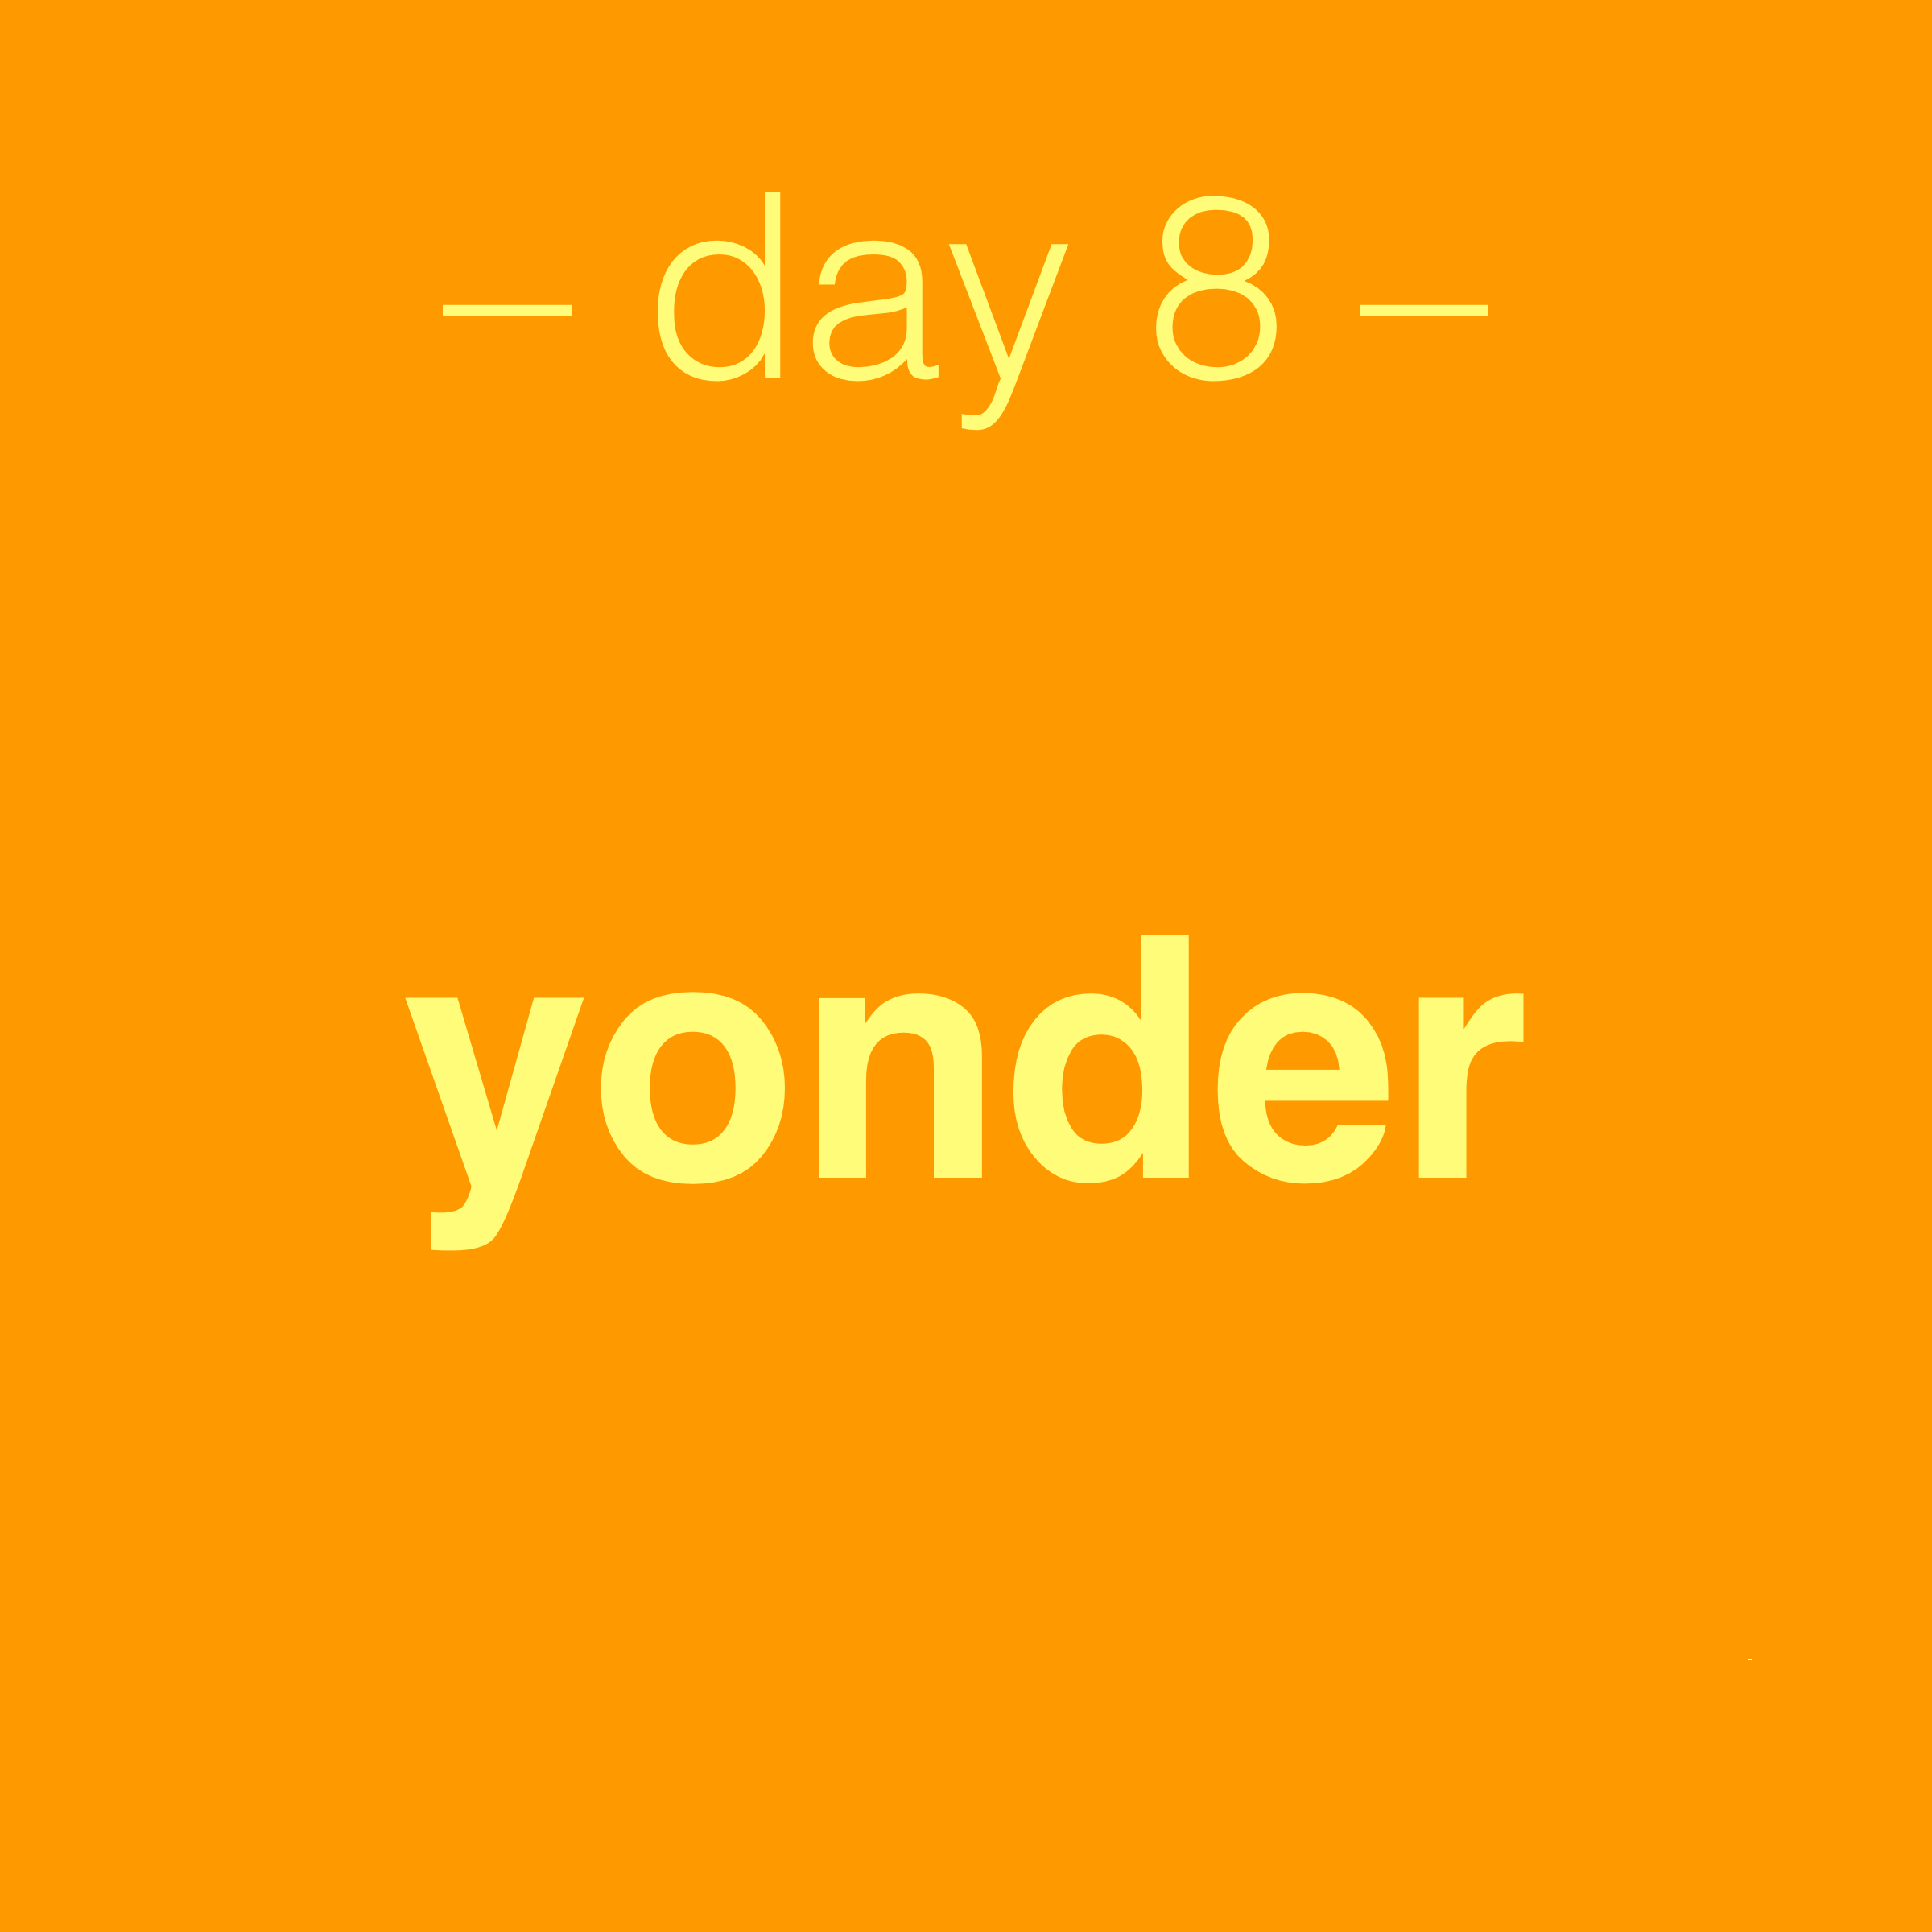 day 8: yonder